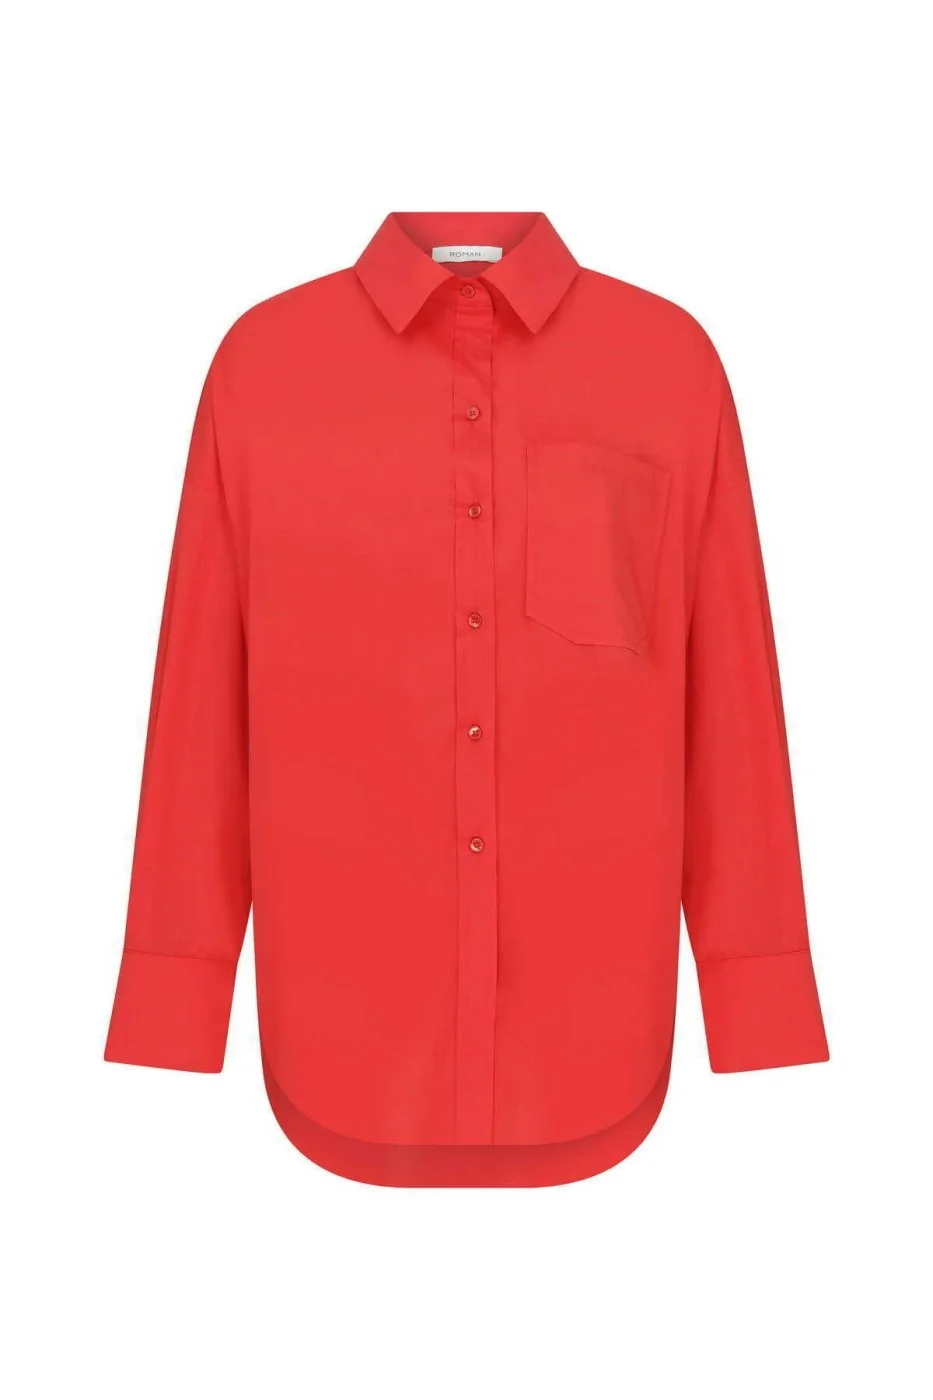  Cepli Kadın Gömlek Kırmızı - 4